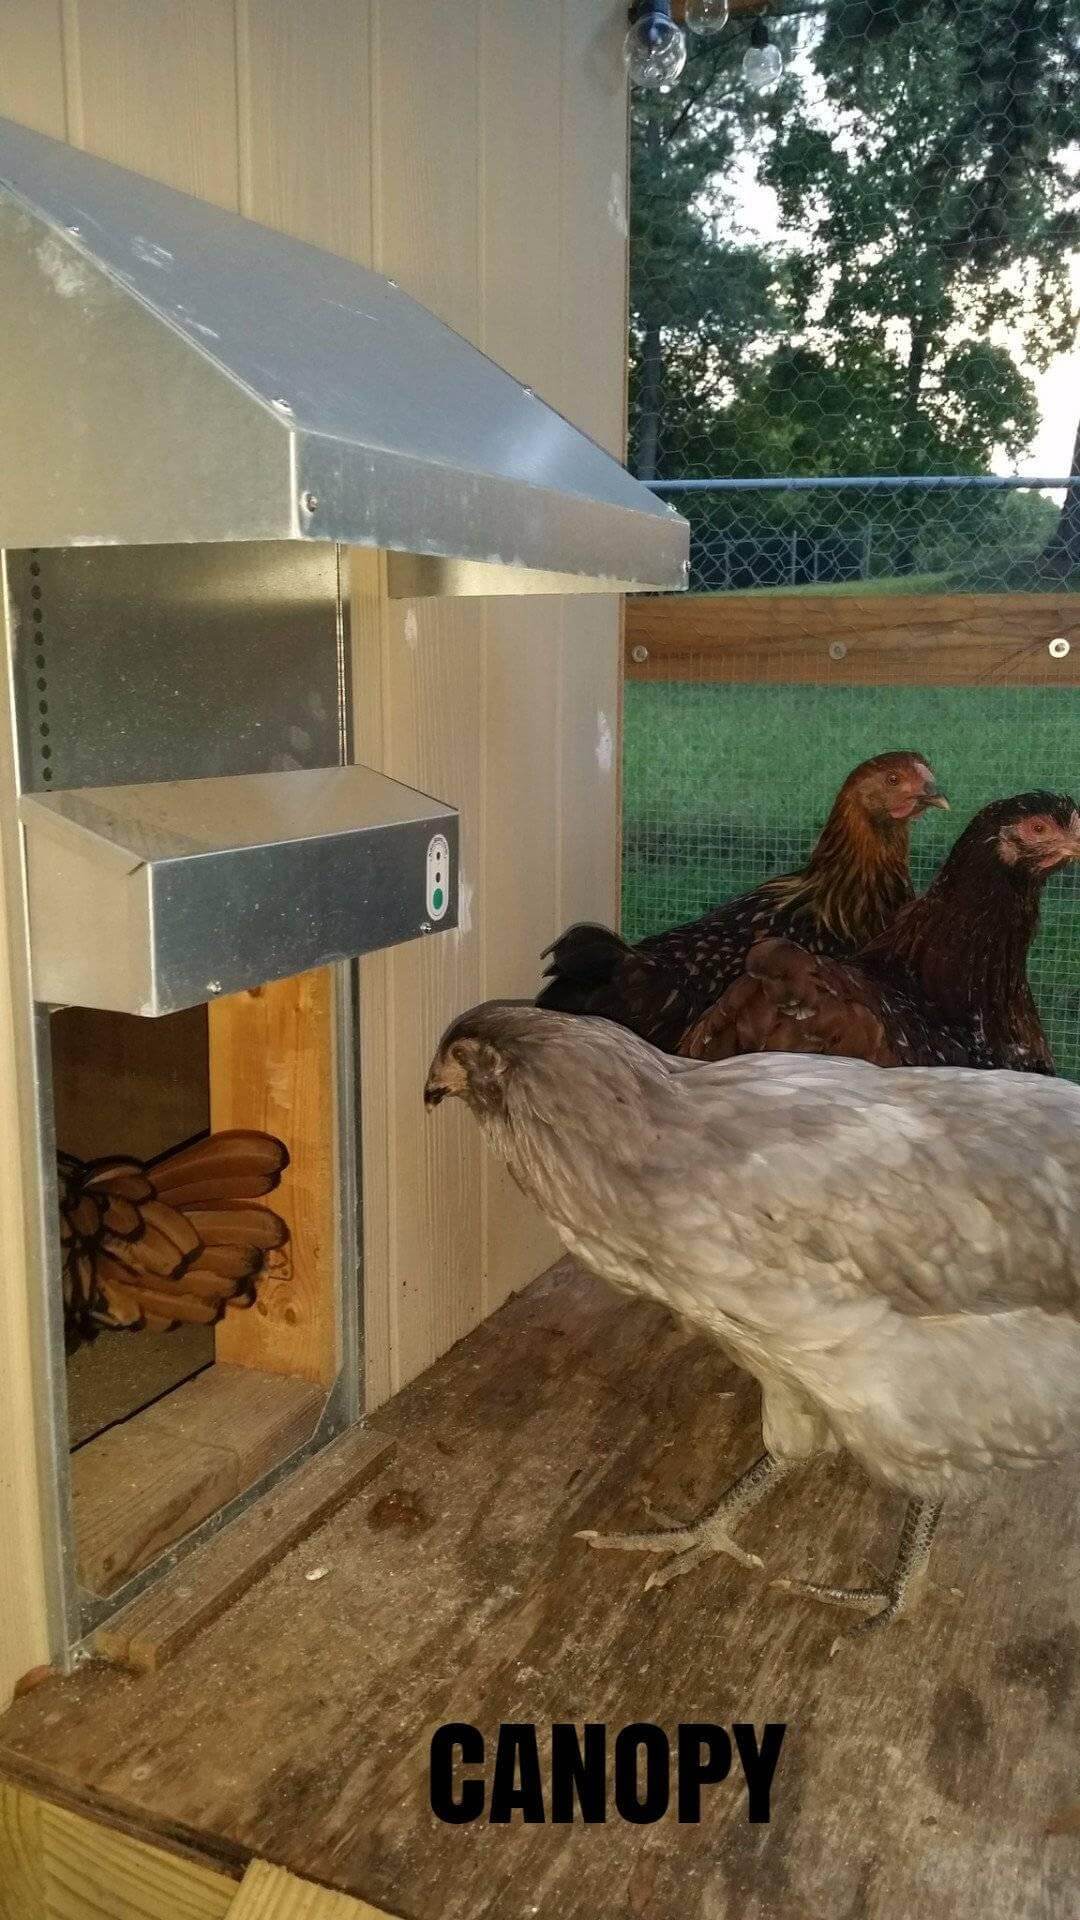 Automatic Chicken Coop Door - ADOR1-automatic chicken coop door picture with canopy